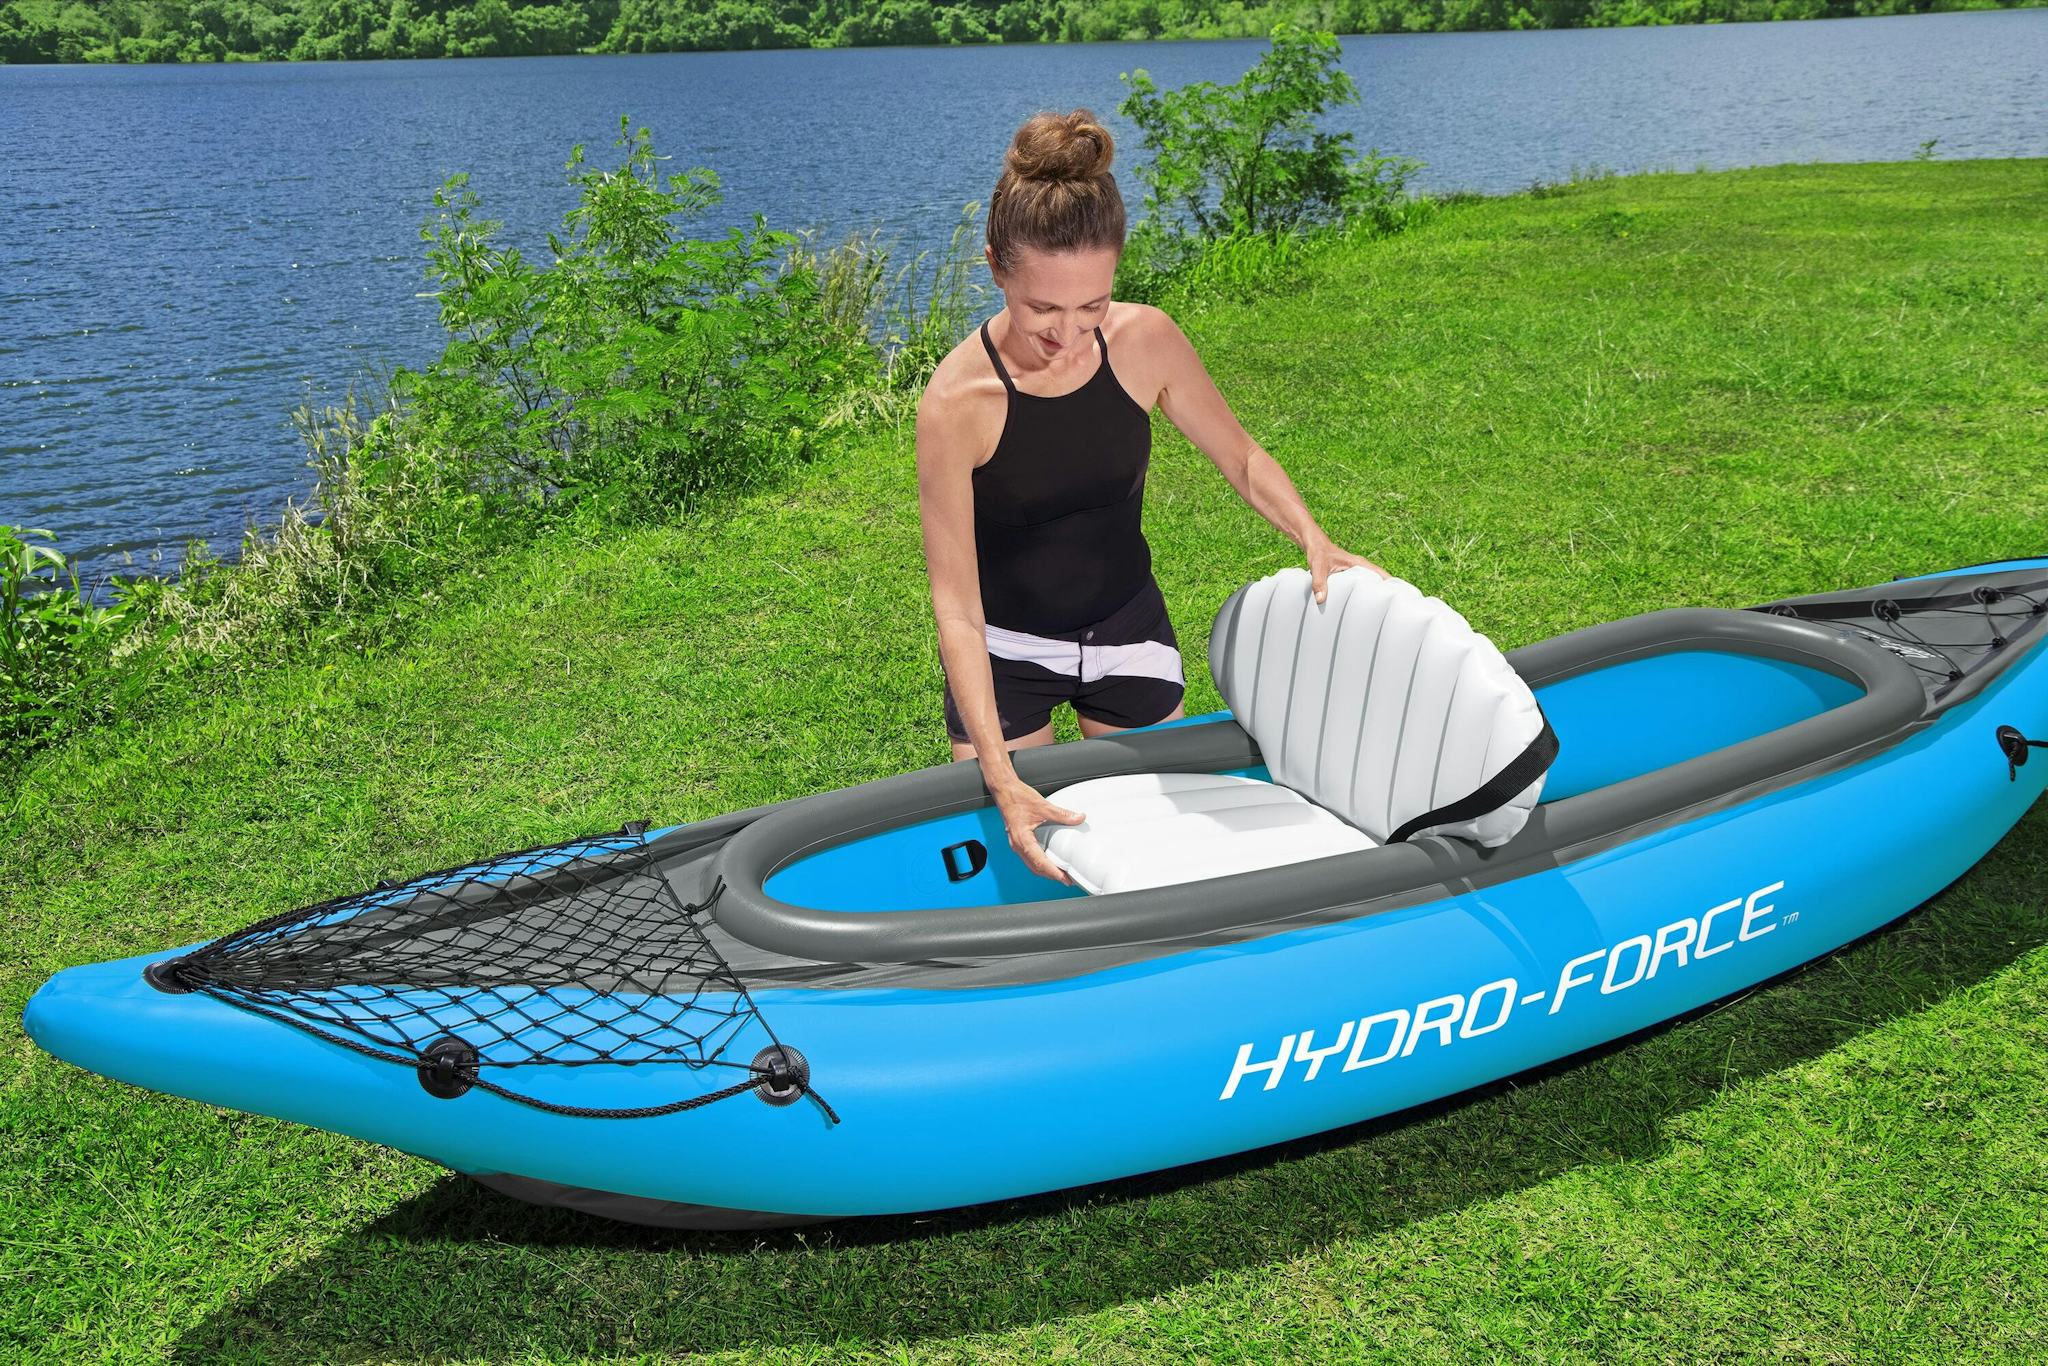 Sports d'eau Kayak gonflable Cove Champion X2 Hydro-Force™ 331 x 88cm, 2 places, 180 kg max, 2 pagaies, 2 ailerons amovibles et une pompe Bestway 7